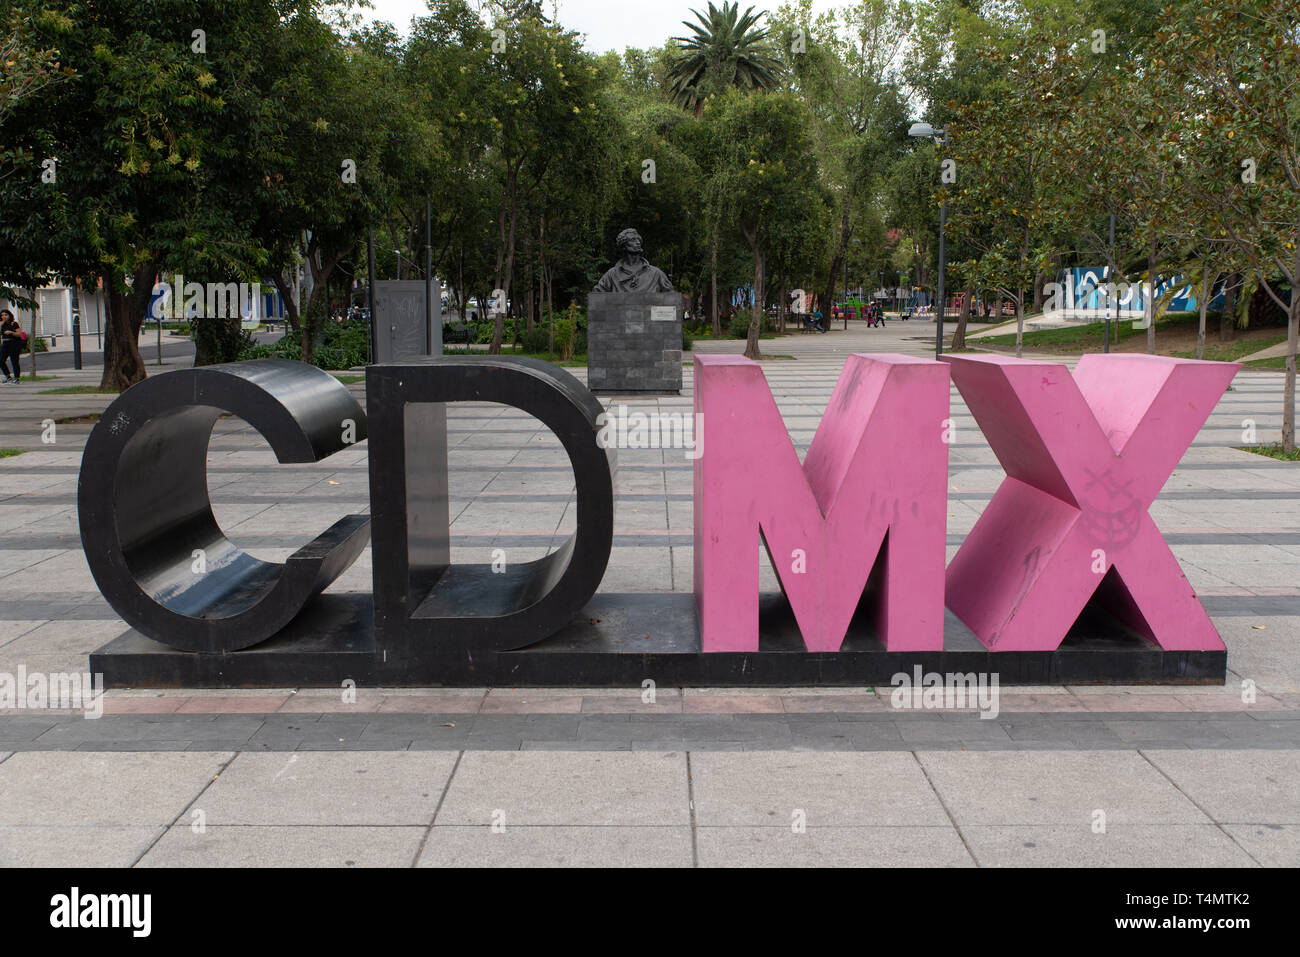 Das Zeichen CDMX, was Ciudad de Mexico bedeutet, ist der neue Name, der 2016 den Begriff 'Mexico D.F' ersetzte. / The sign CDMX, which means Ciudad de Stock Photo